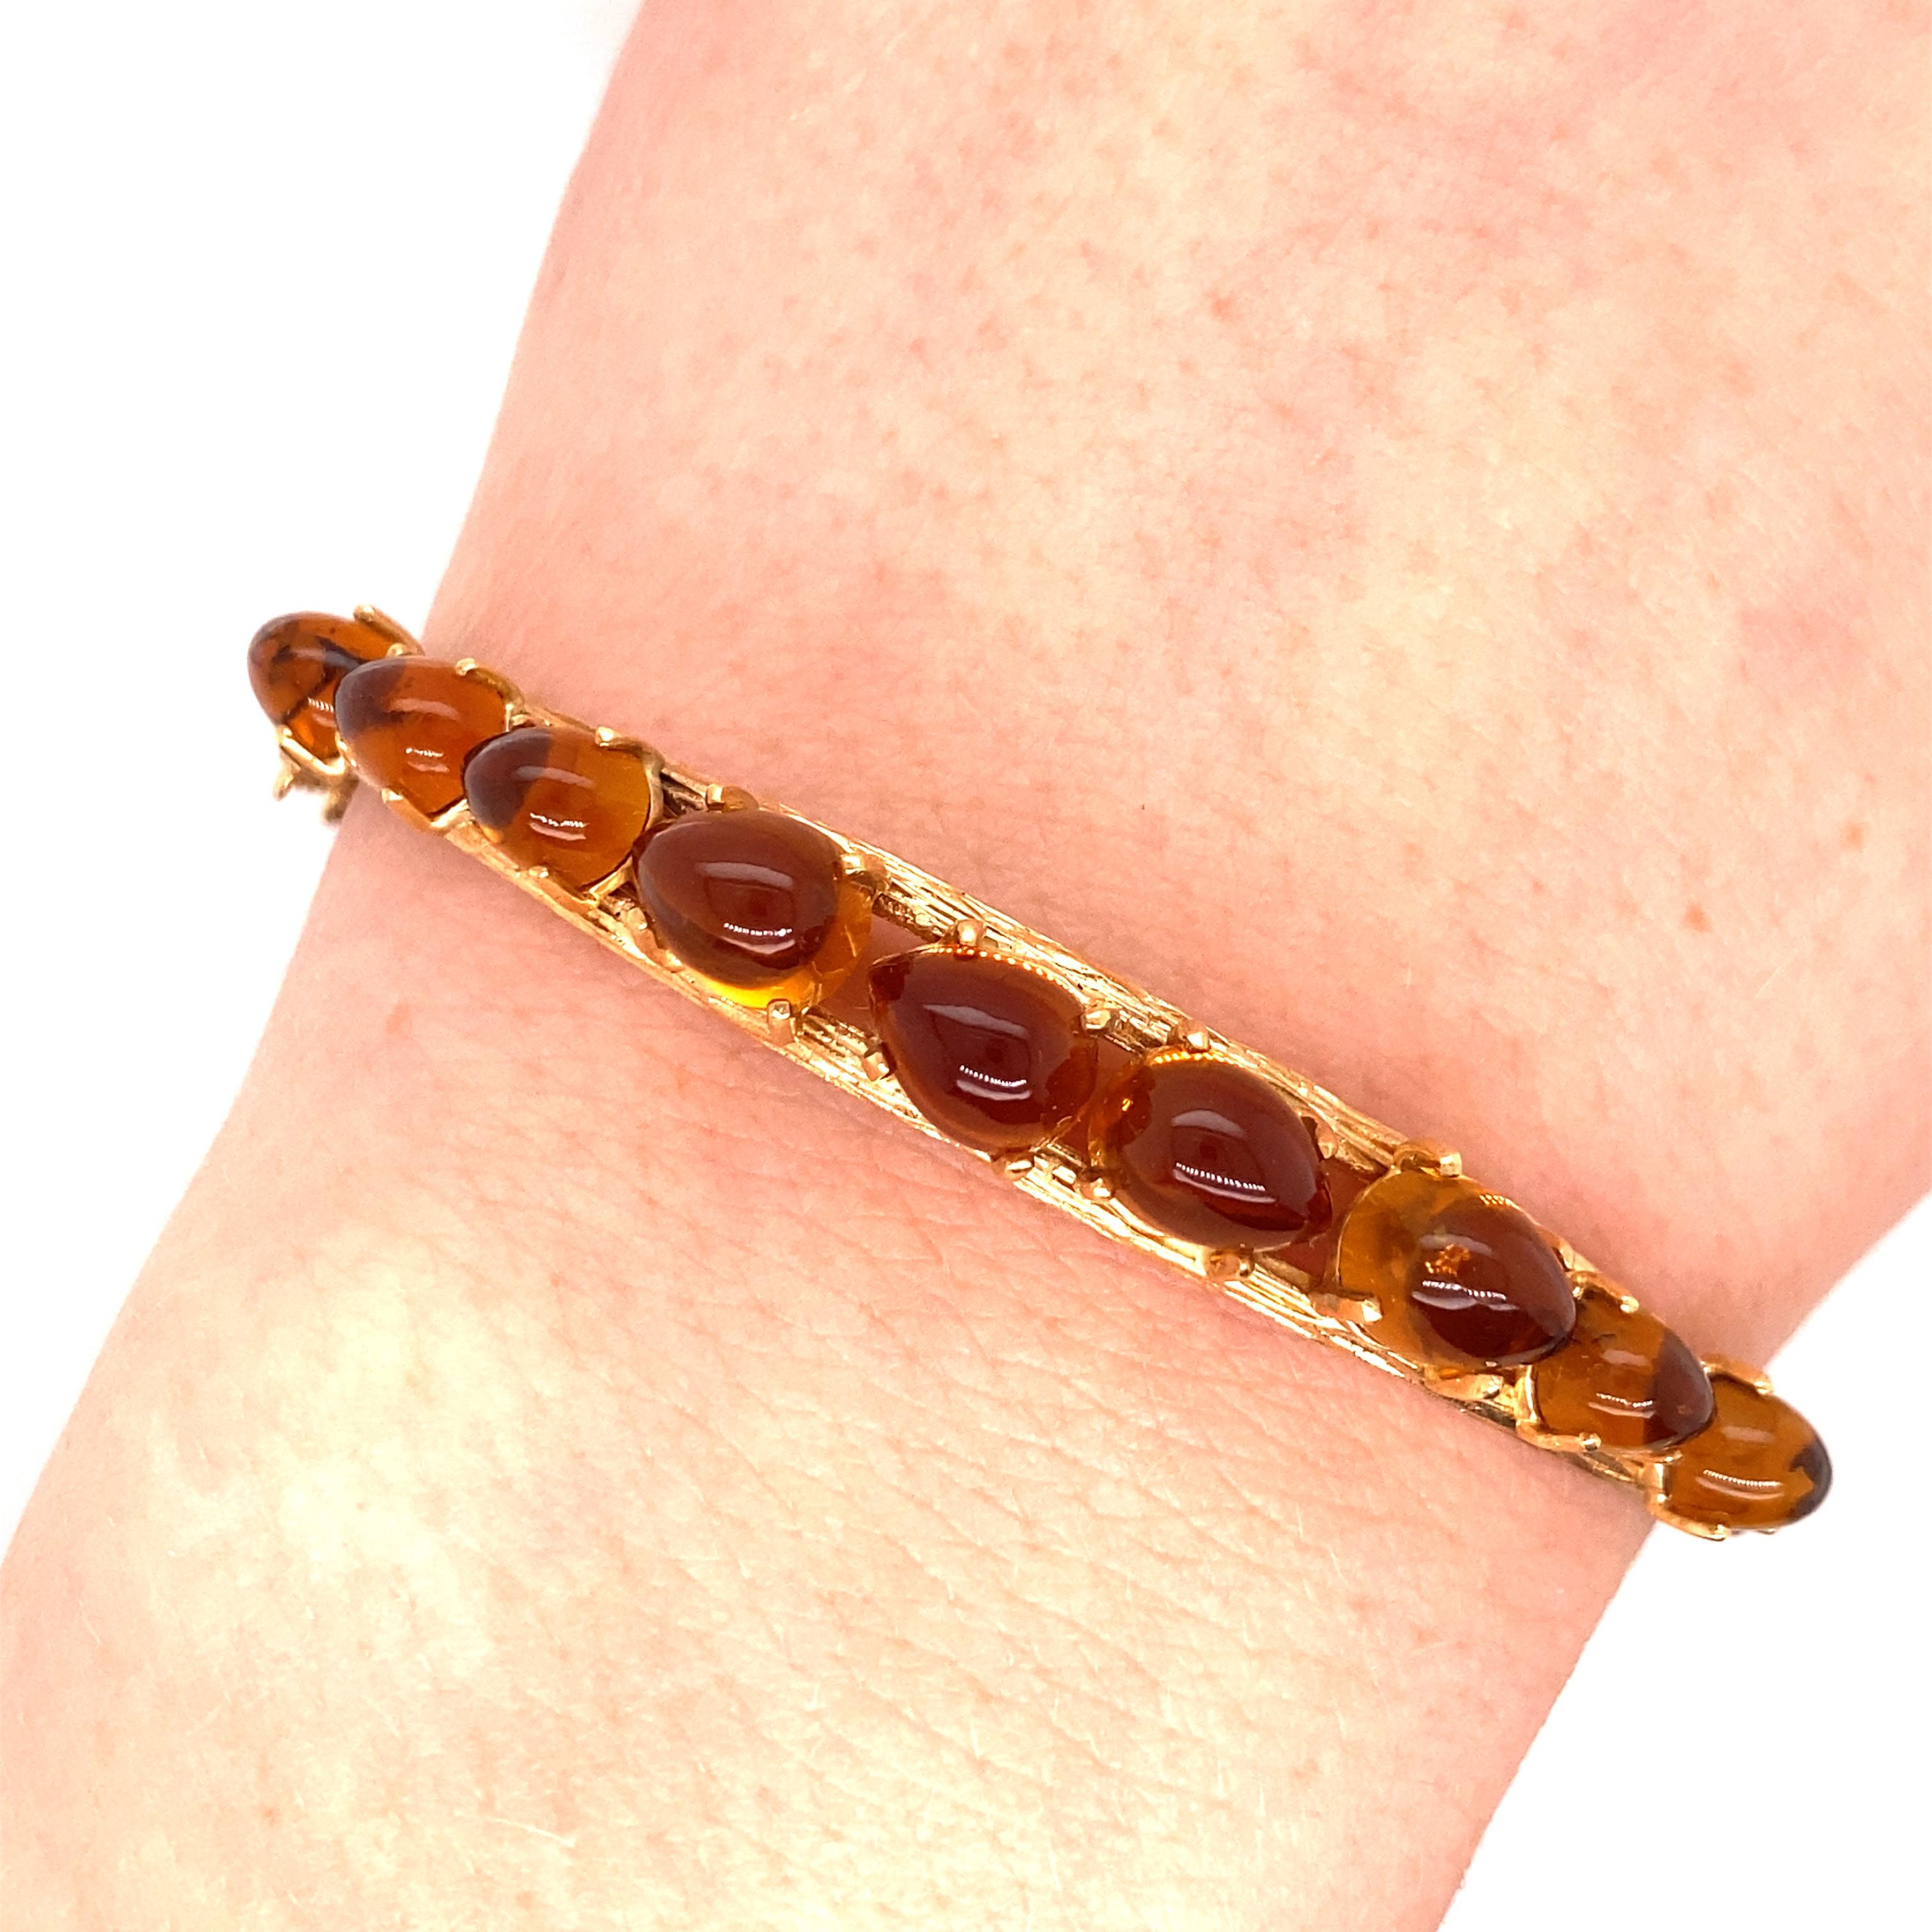 Bracelet vintage en or jaune 14 carats avec ambre - Le bracelet est composé de 9 pierres d'ambre cabochon en forme de poire, de taille graduée, montées sur des têtes à 4 griffes. Le bracelet en or a une texture naturelle et mesure 0,25 pouce de